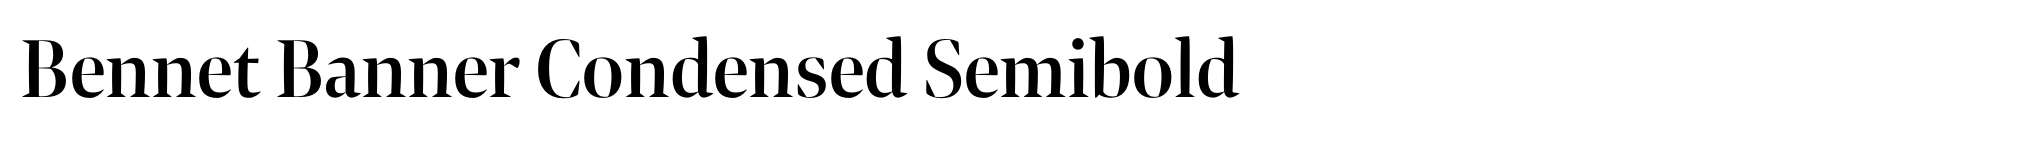 Bennet Banner Condensed Semibold image